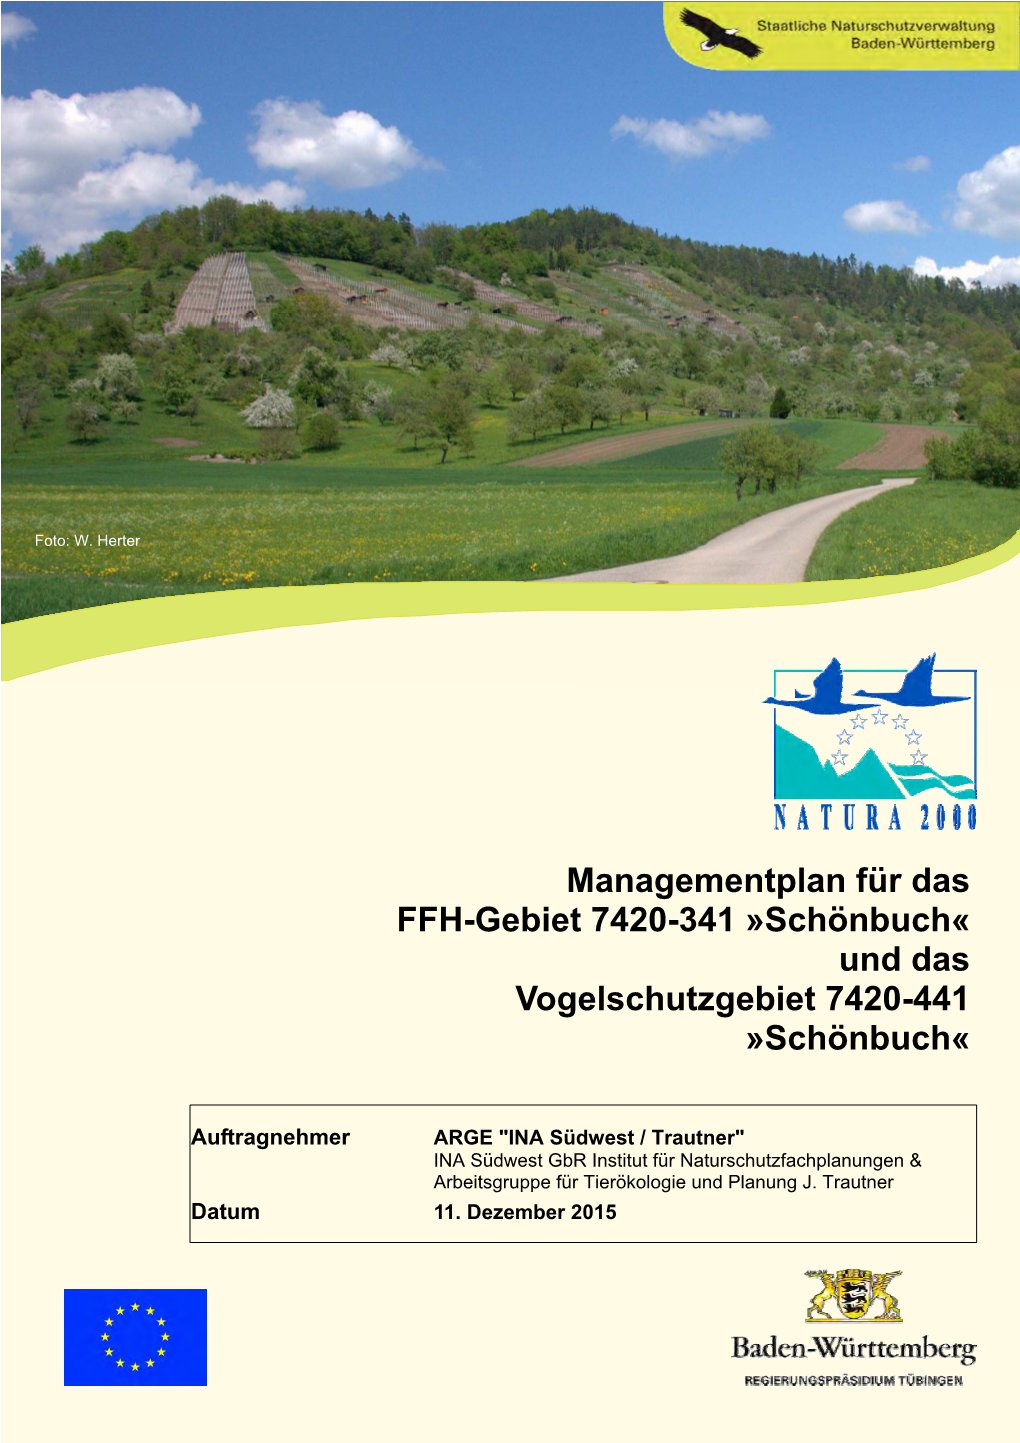 Managementplan Für Das FFH-Gebiet 7420-341 »Schönbuch« Und Das Vogelschutzgebiet 7420-441 »Schönbuch«